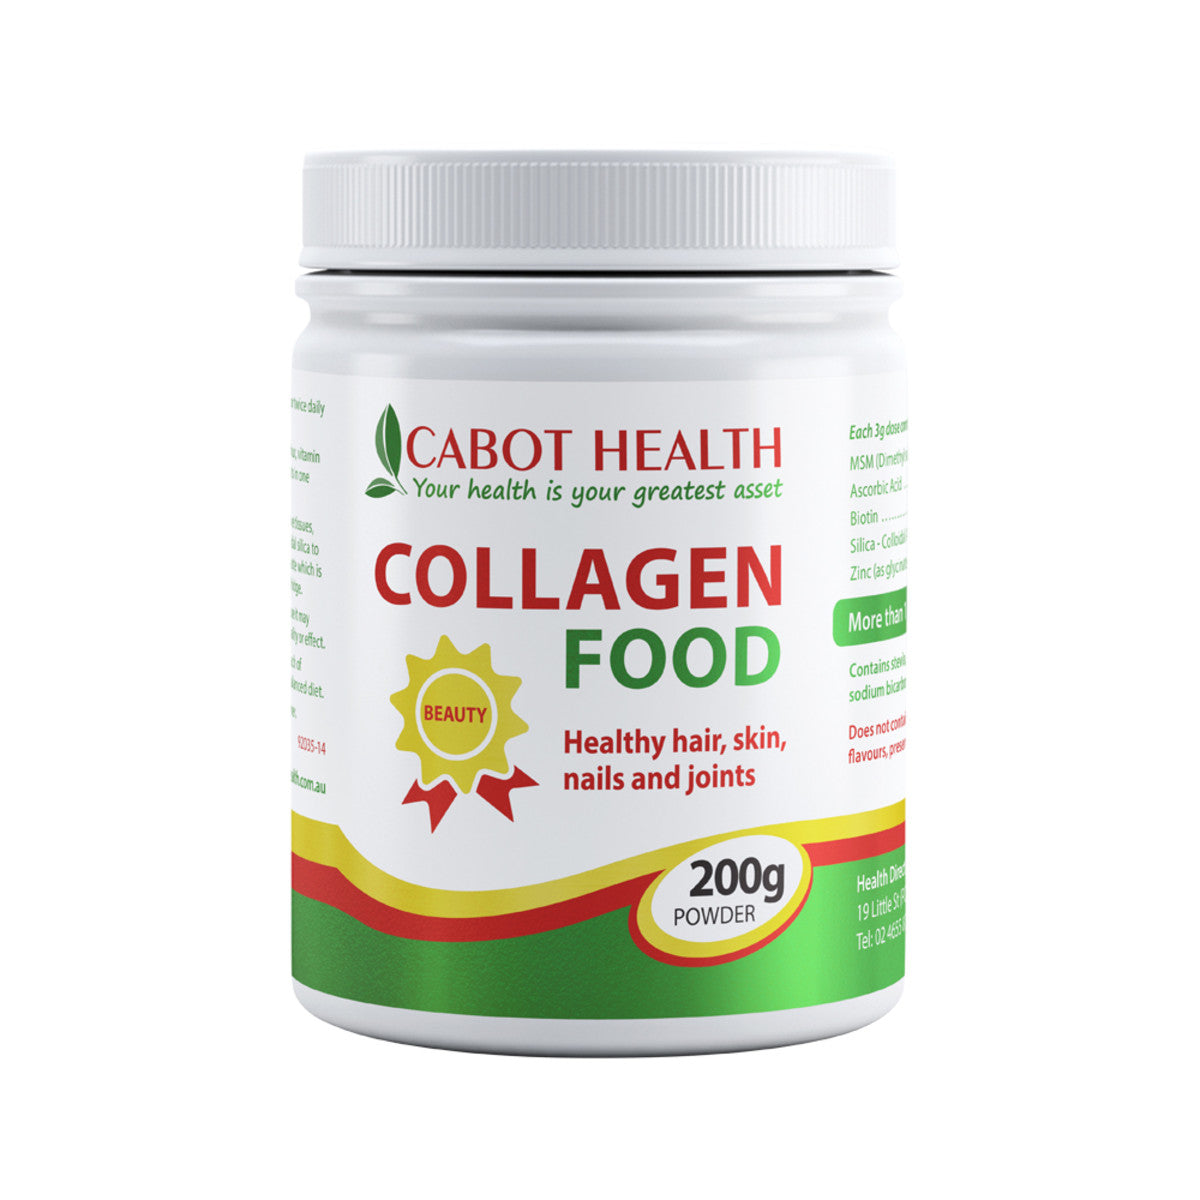 Cabot Health - Collagen Food